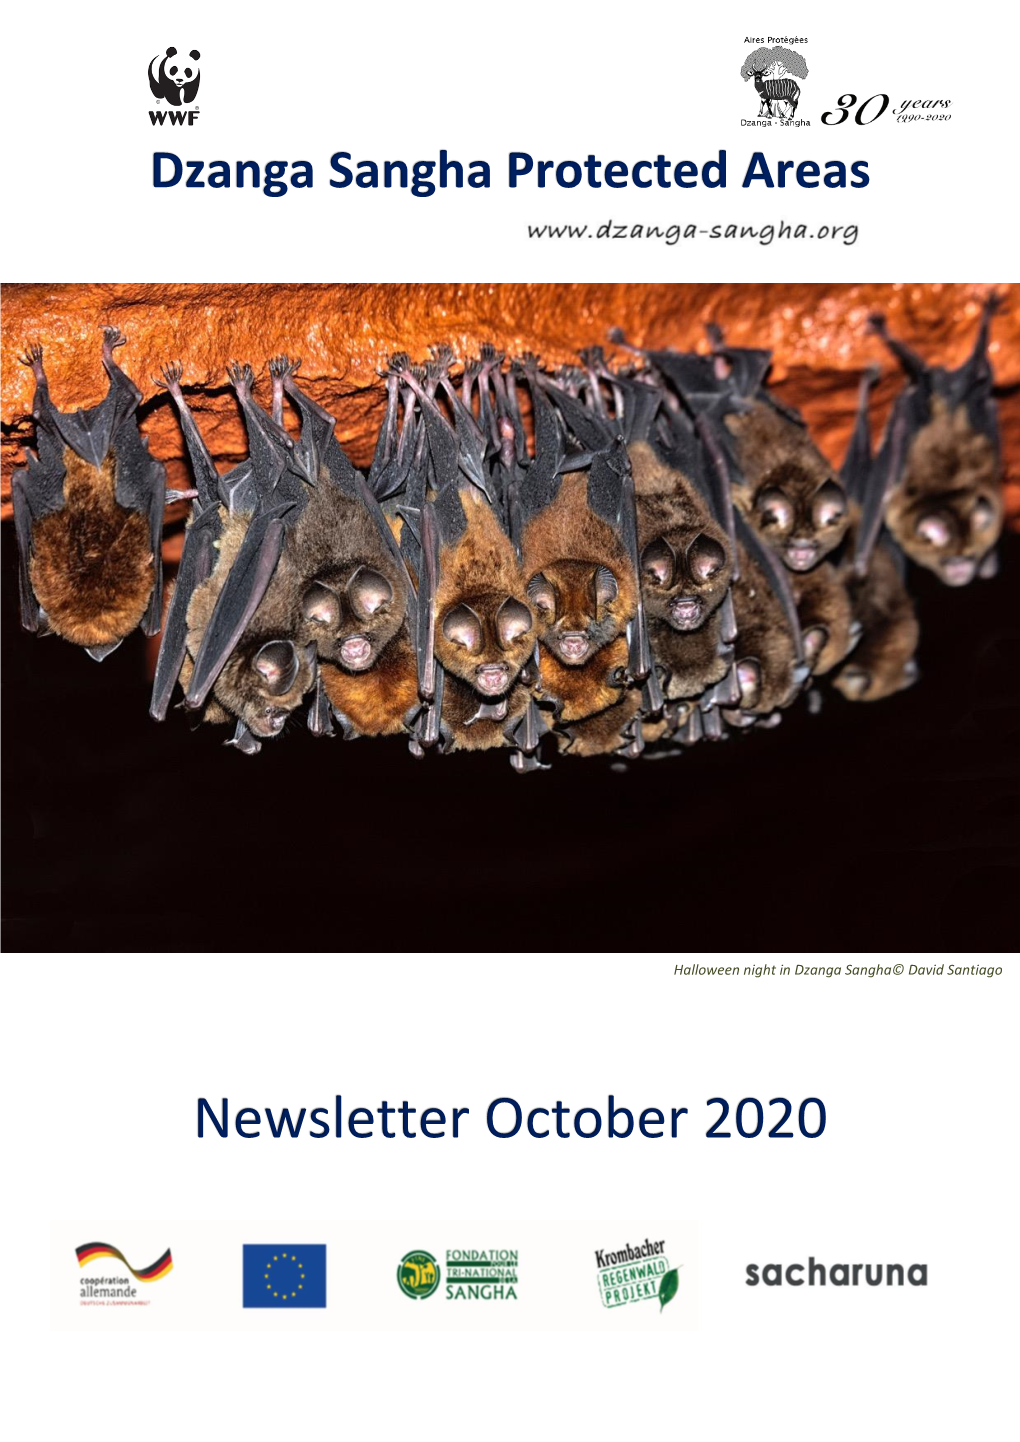 Newsletter October 2020